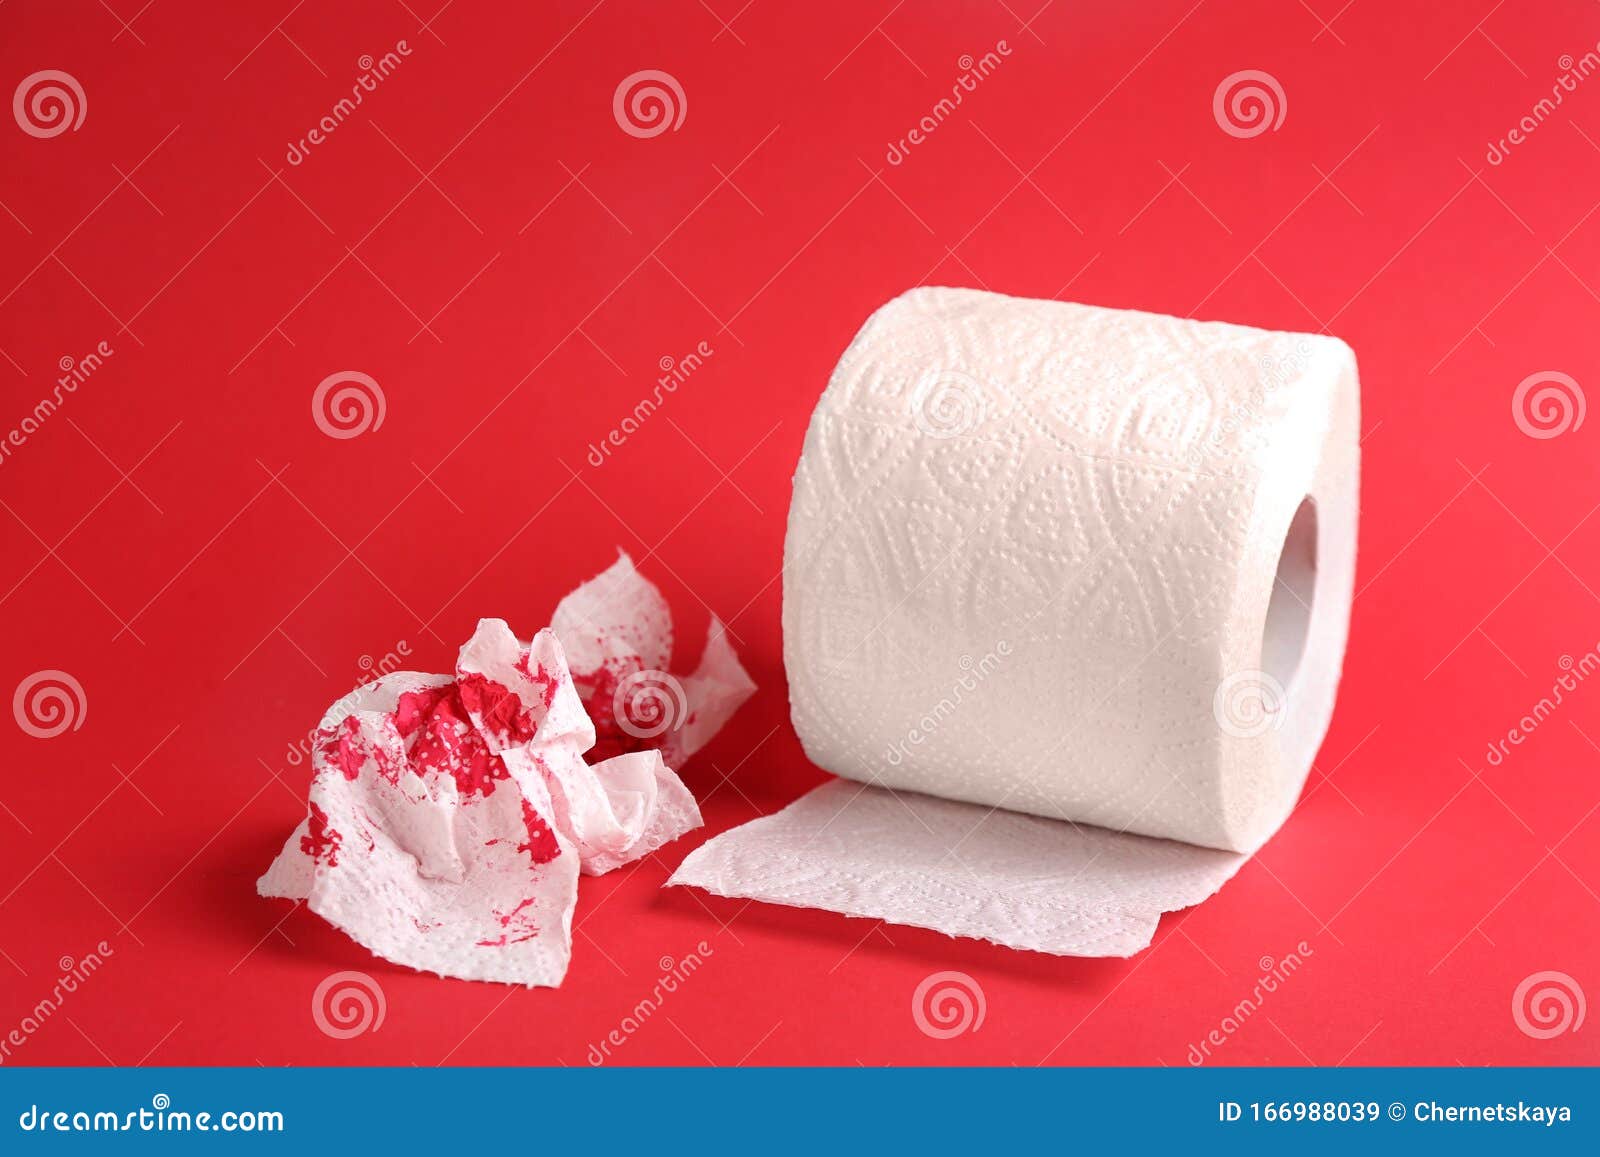 Кровь на туалетной бумаге. Туалетная бумага Кровавая. Розовая кровь на туалетной бумаге. Геморрой от туалетной бумаги.